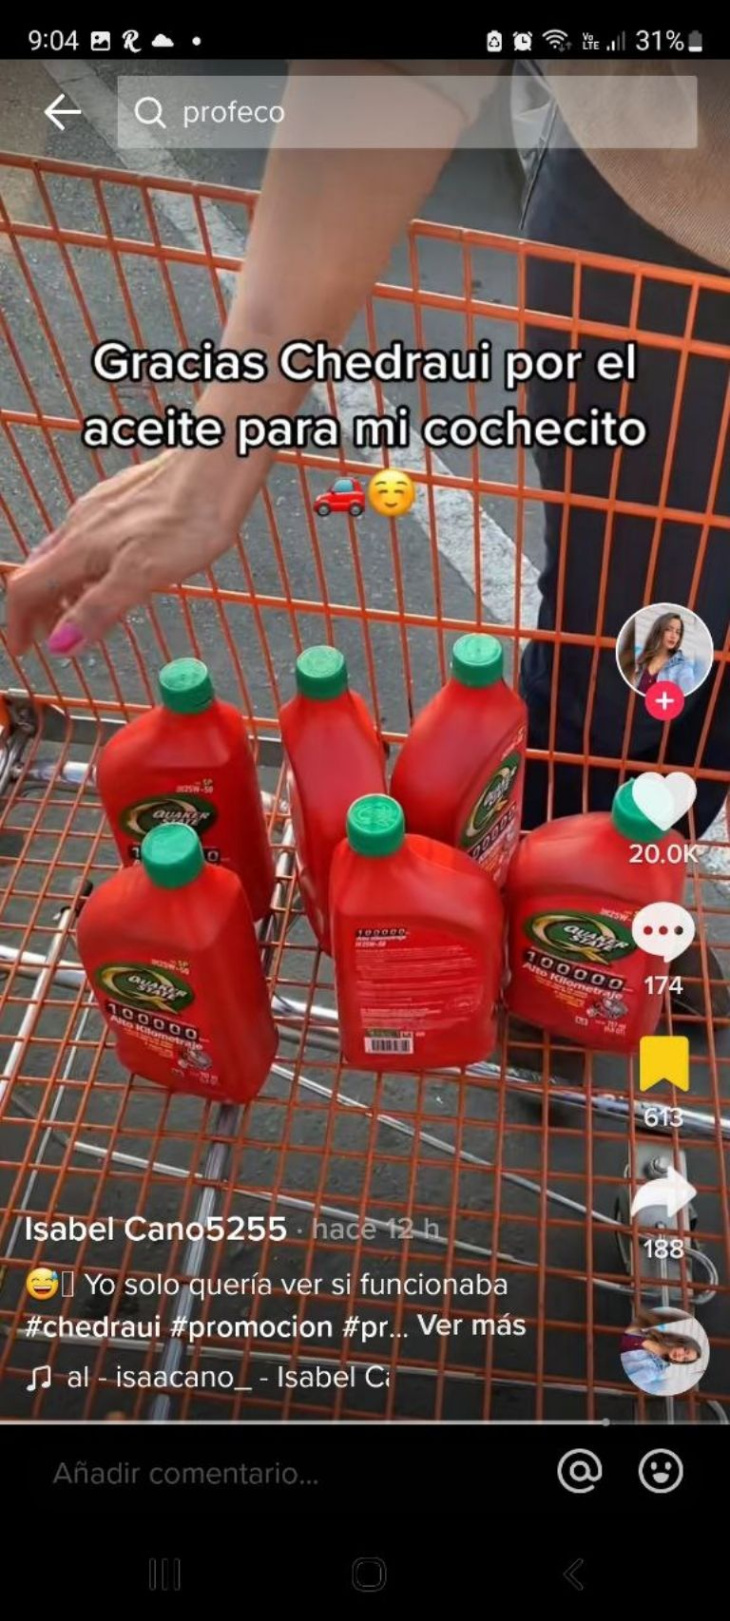 mujer encuentra error en promoción de aceites para auto en chedraui y los compra a dos pesos